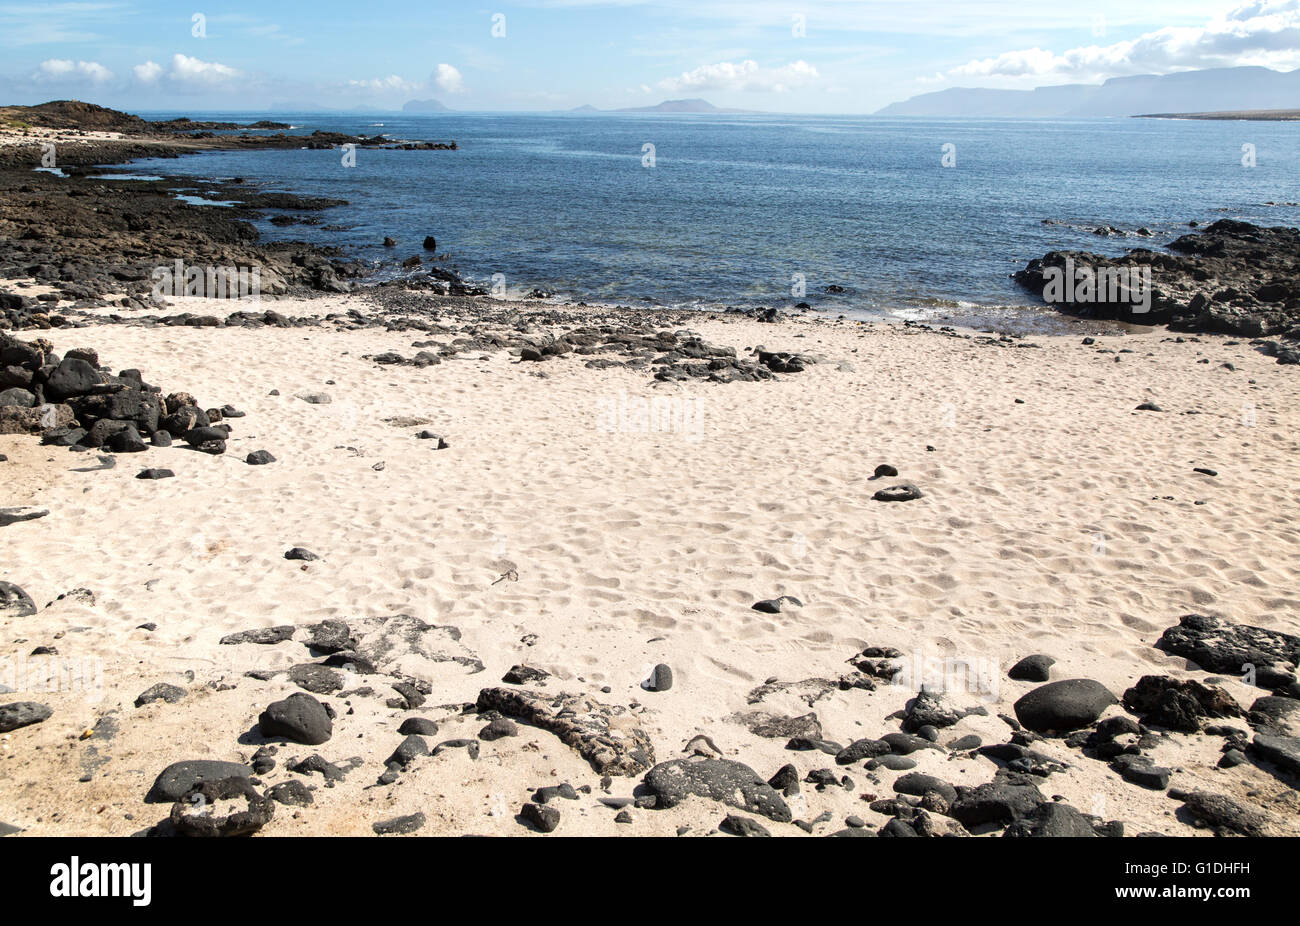 Small sandy beach at Caleta de Caballo, Lanzarote, Canary islands, Spain Stock Photo